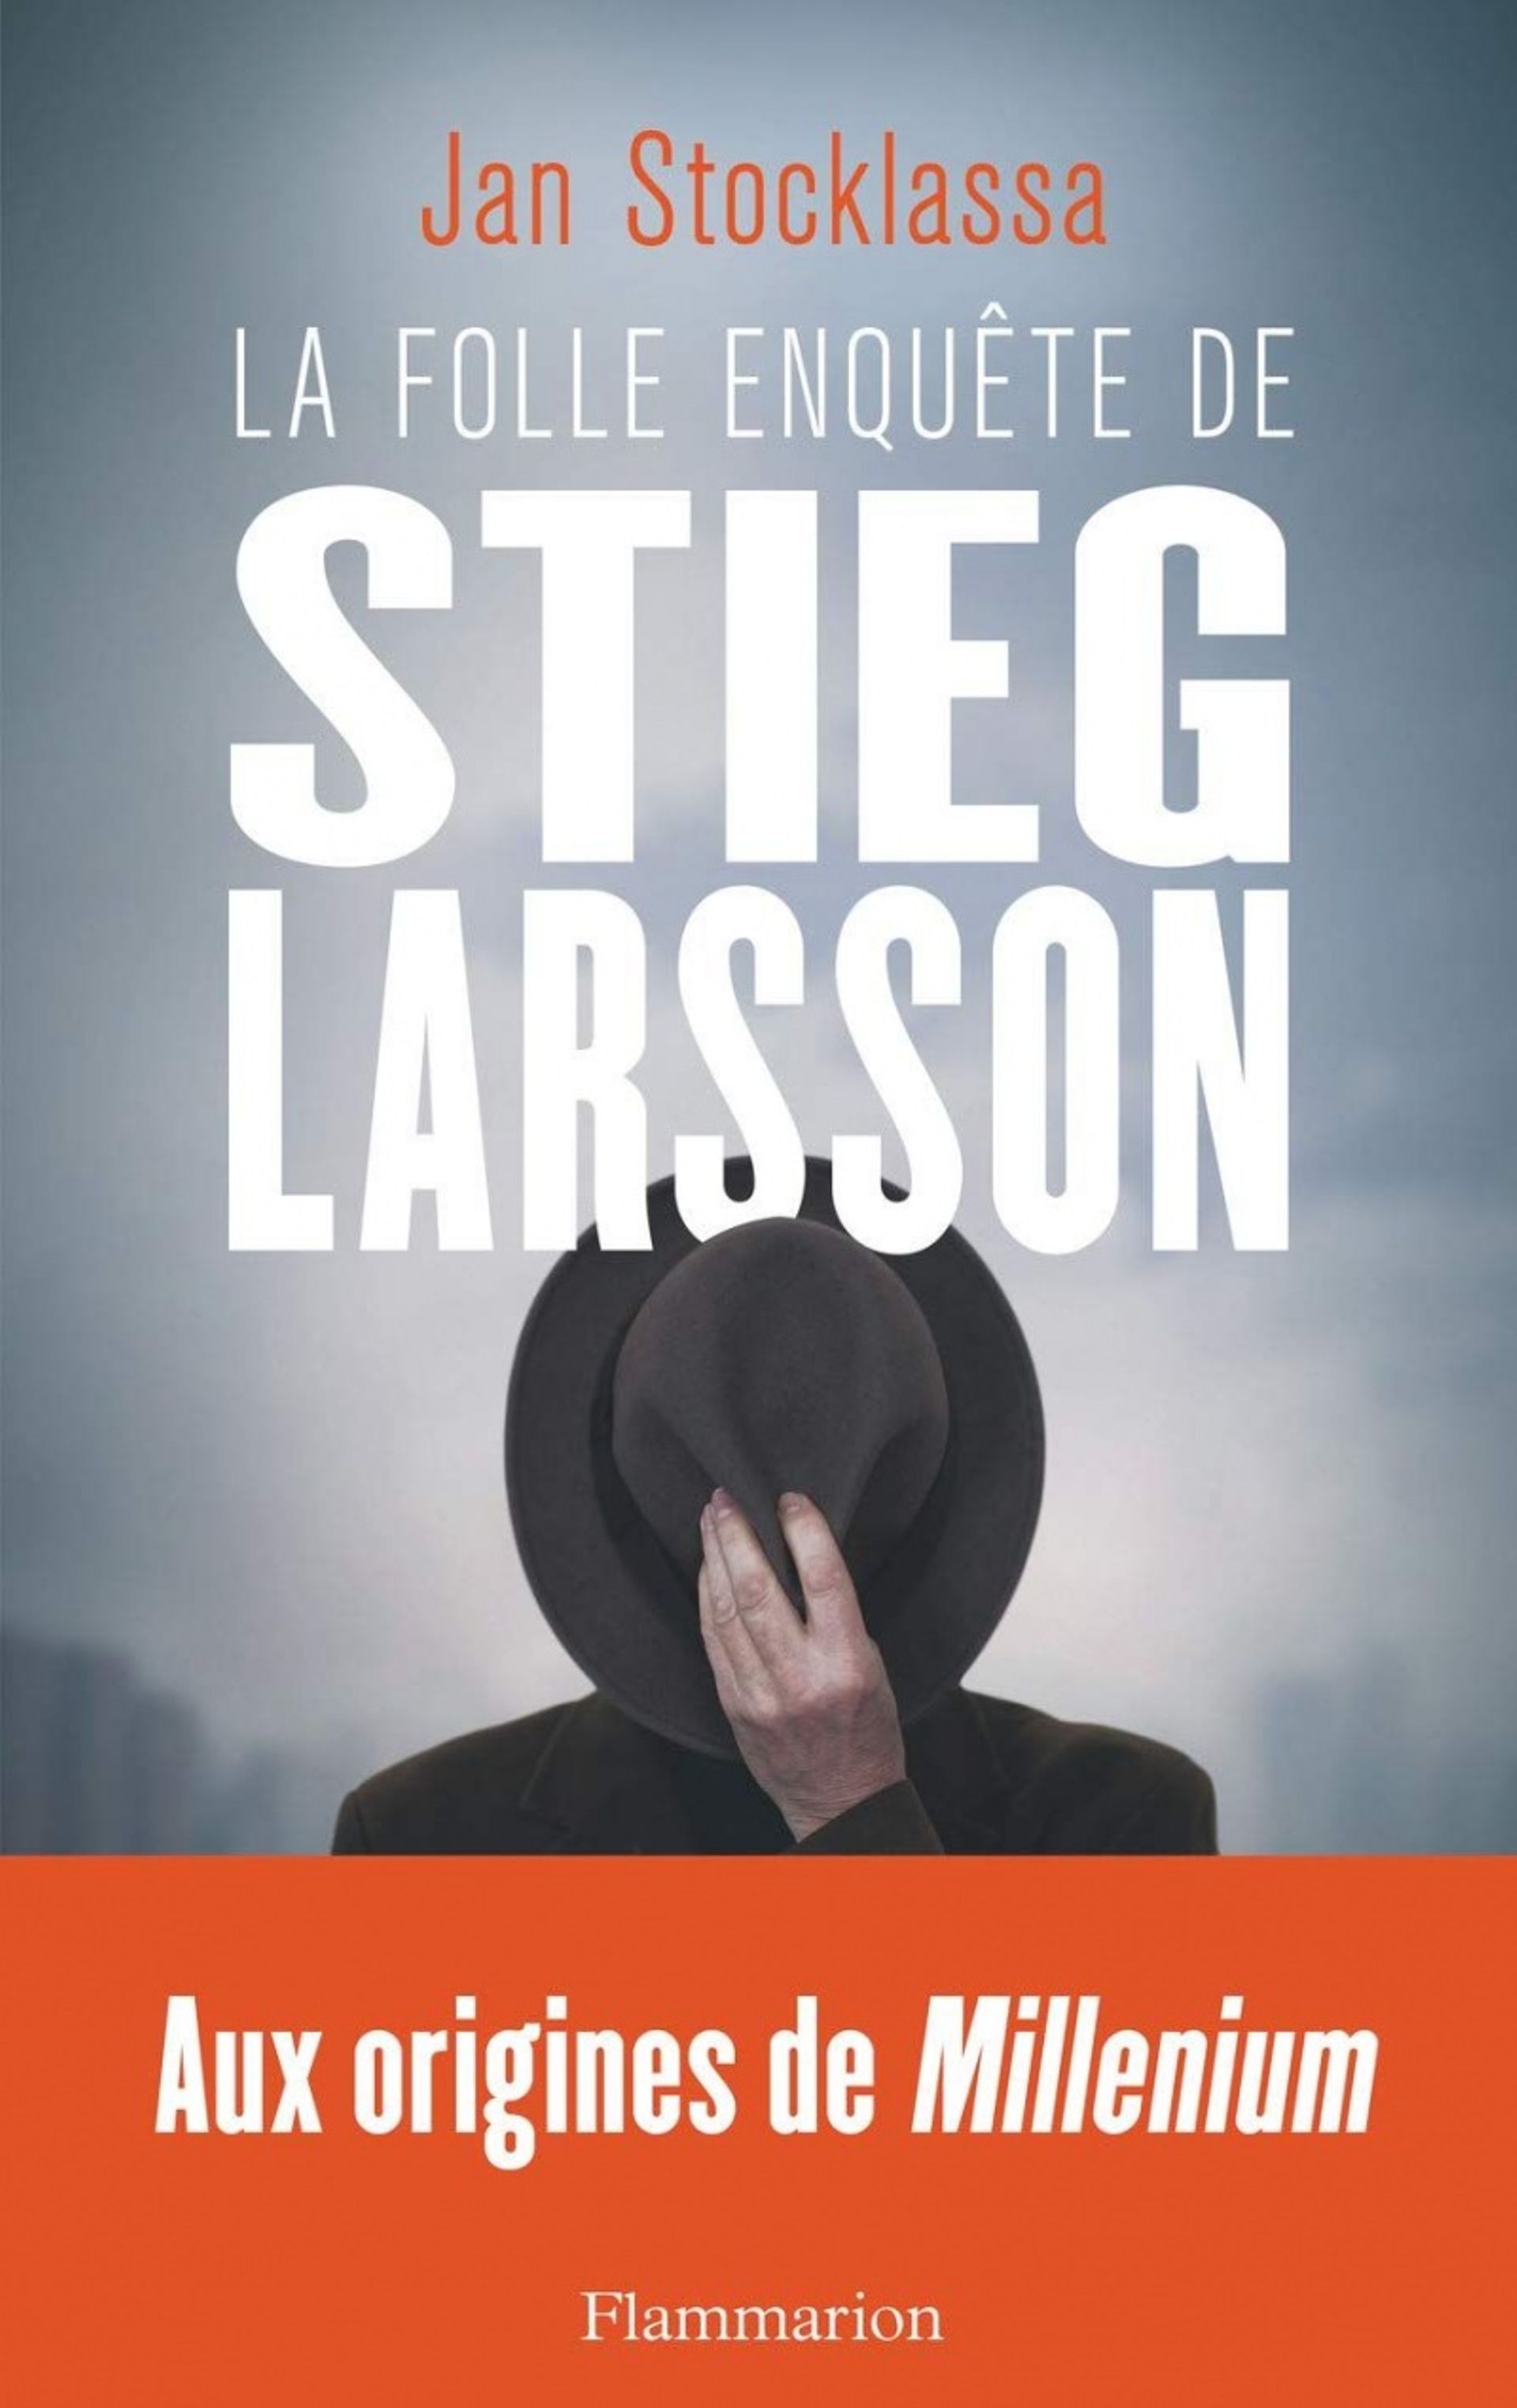 La folle enquête de Stieg Larsson, par Jan Stocklassa